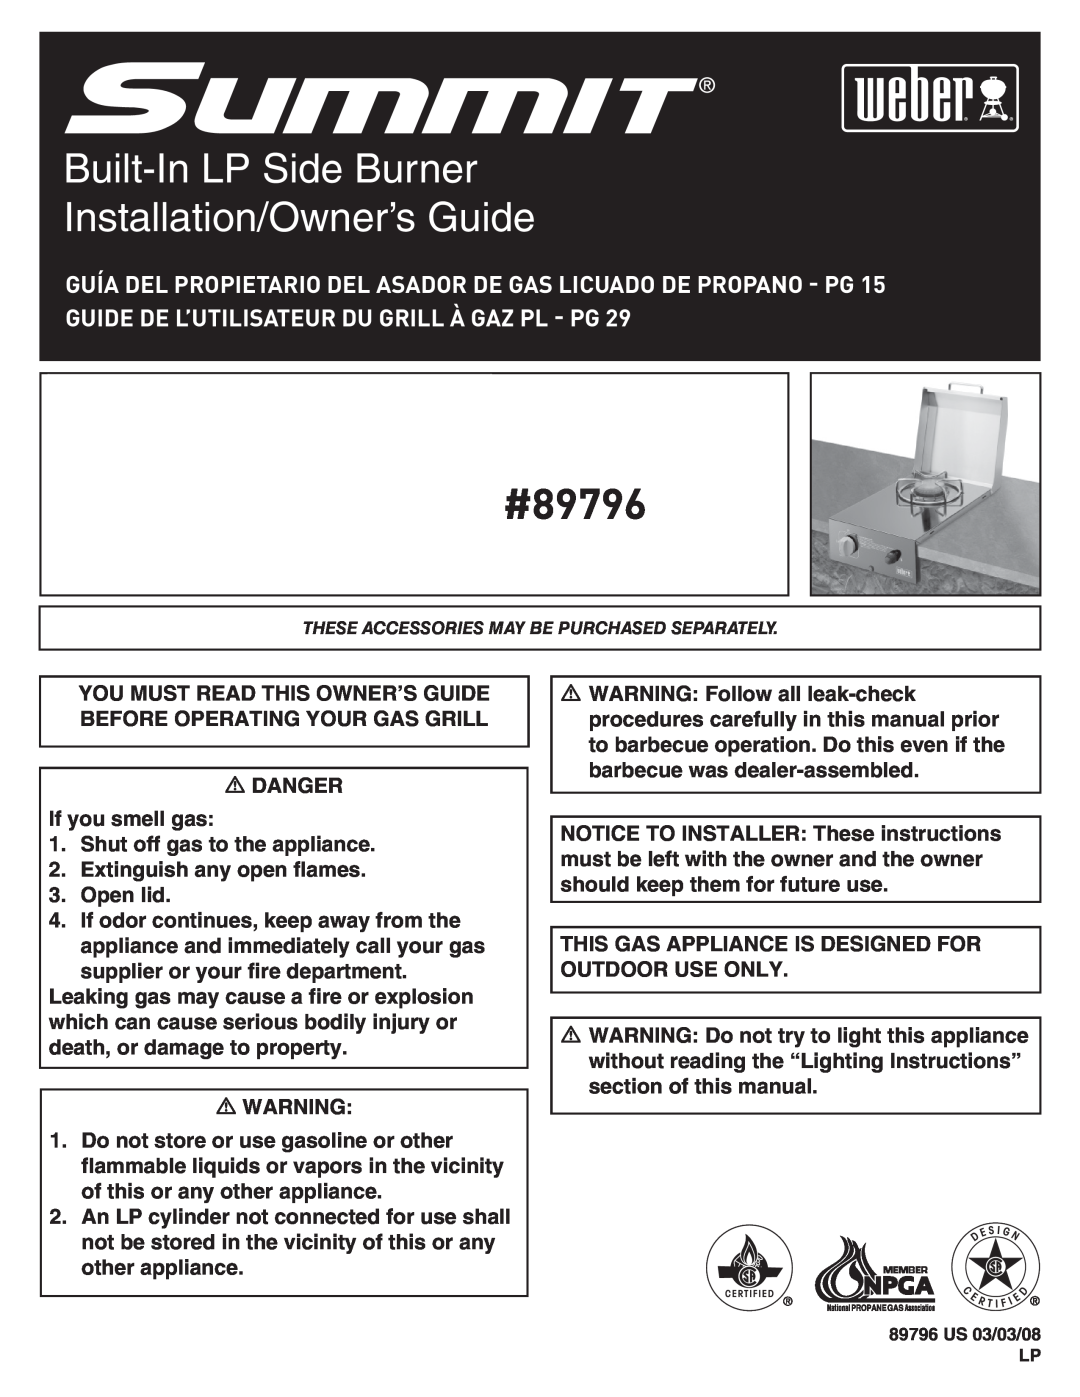 Weber manual #89796, Built-InLP Side Burner Installation/Owner’s Guide 